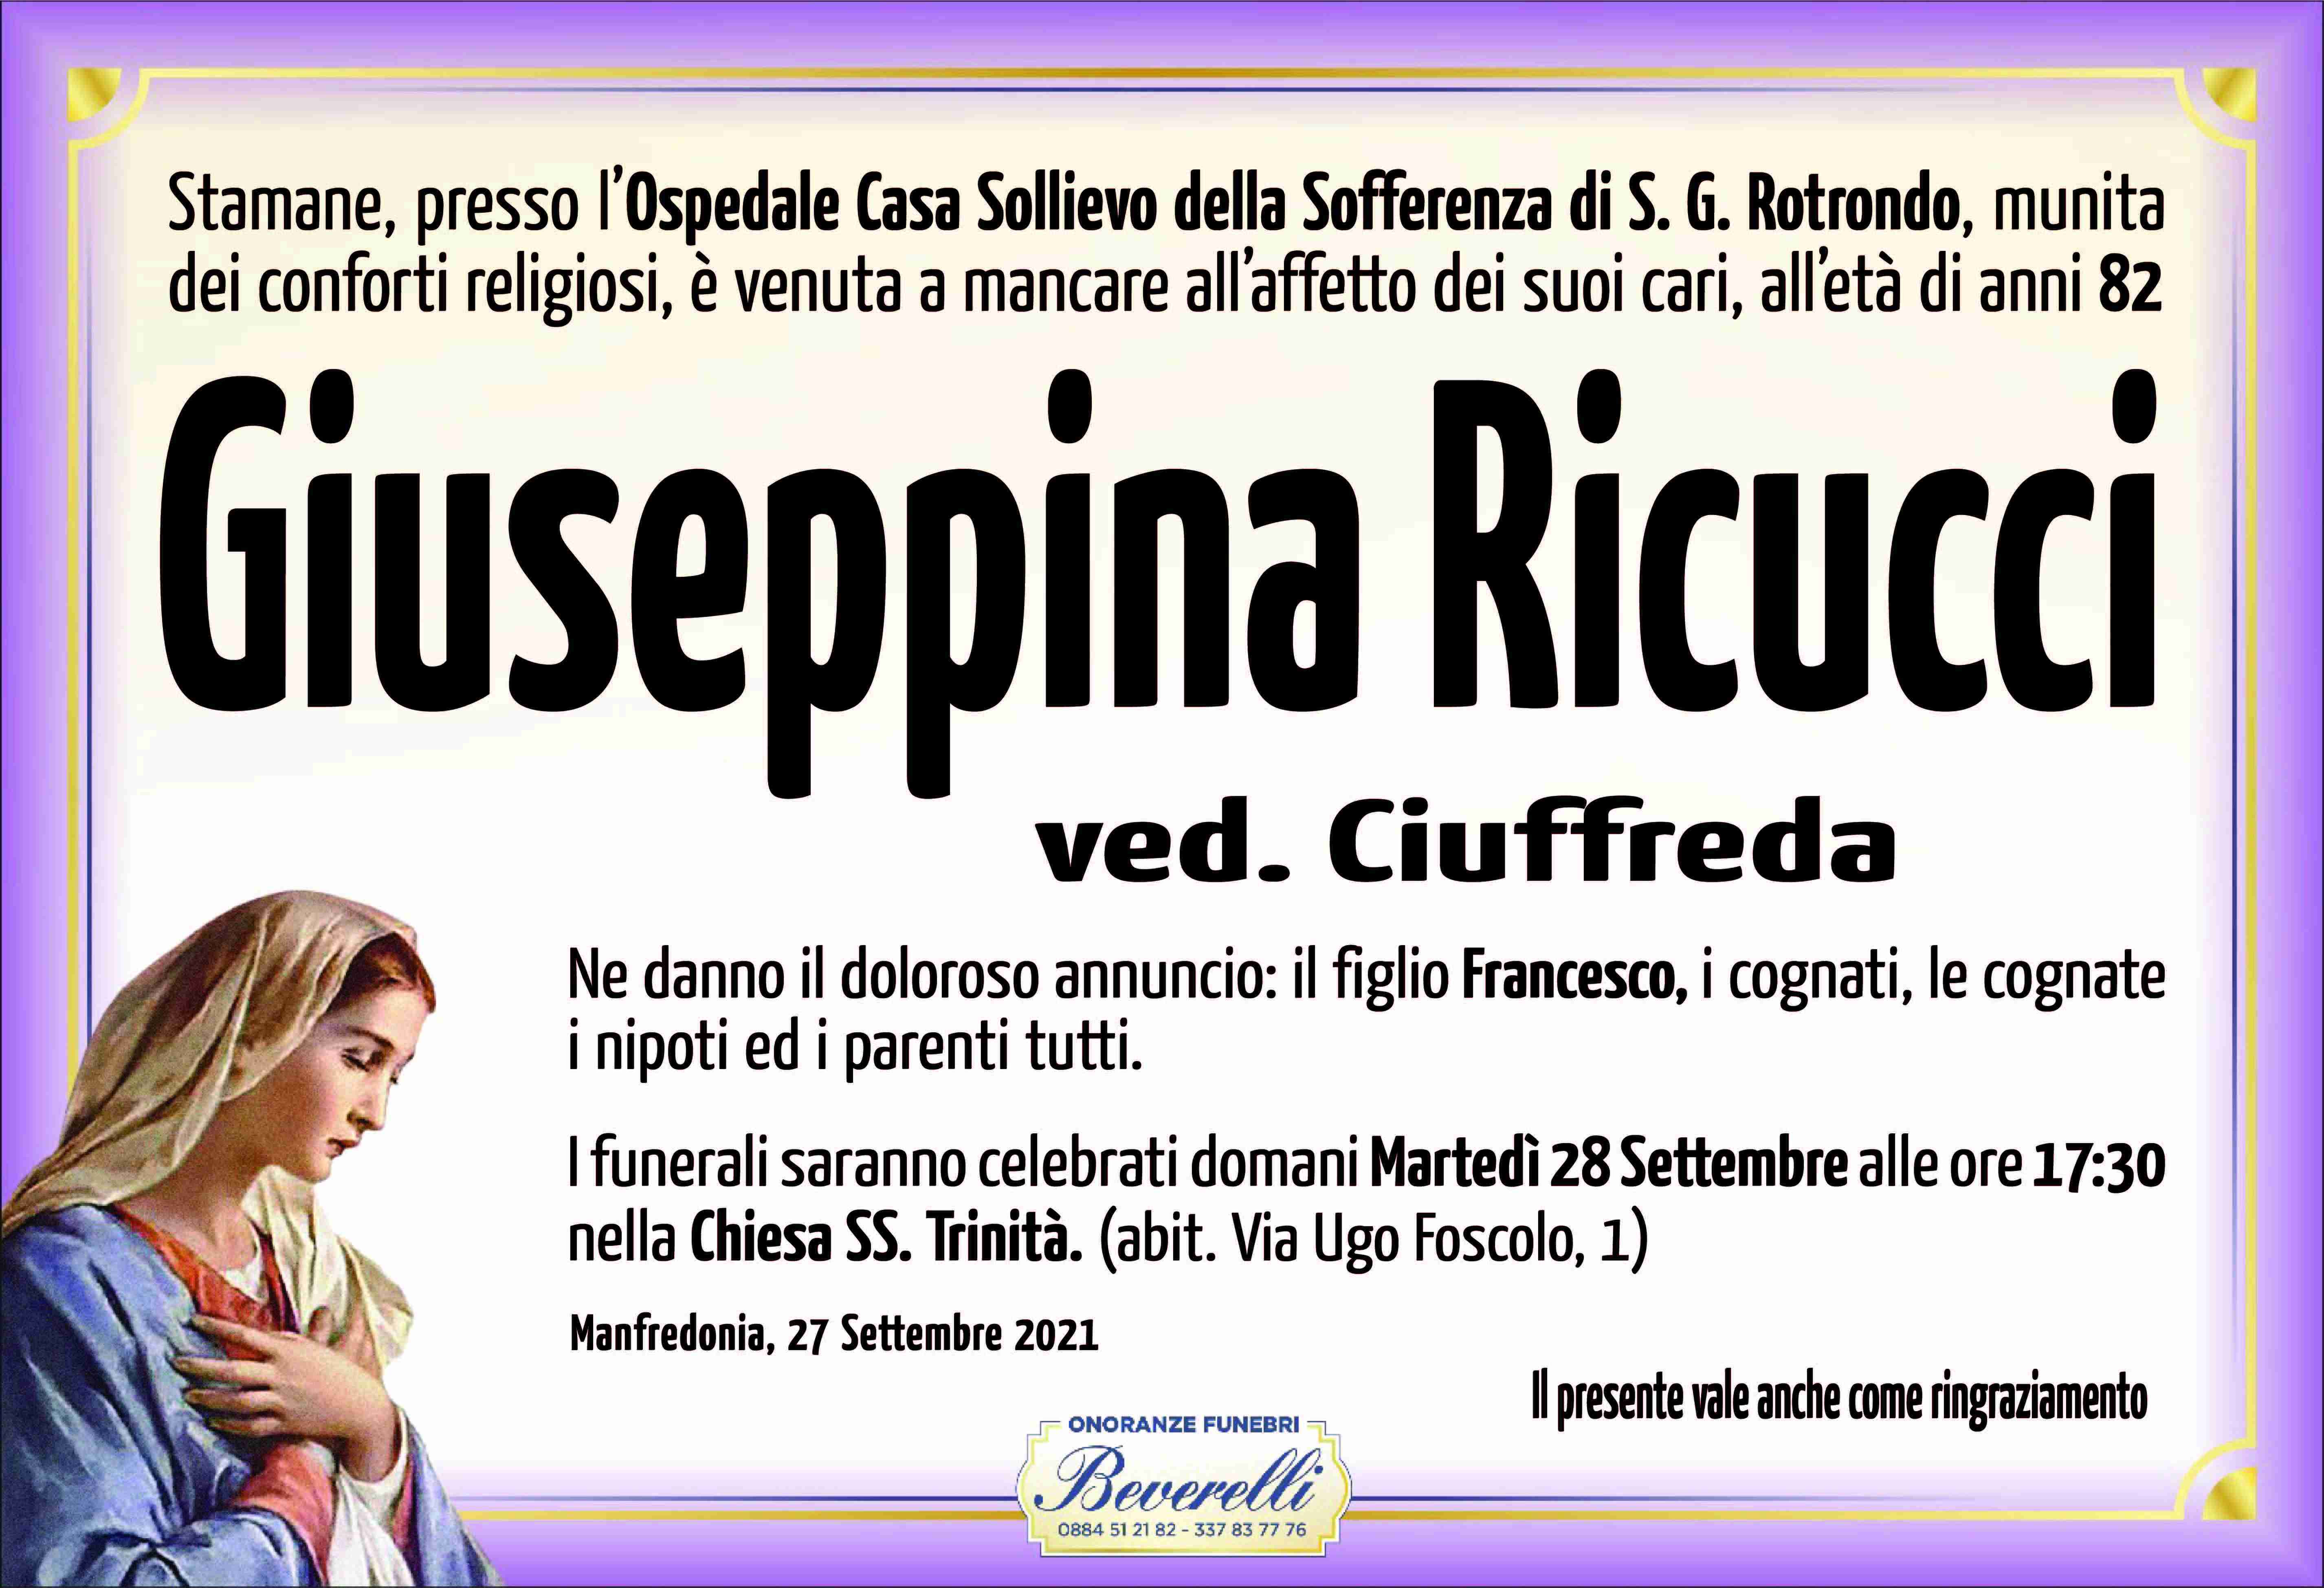 Giuseppina Ricucci